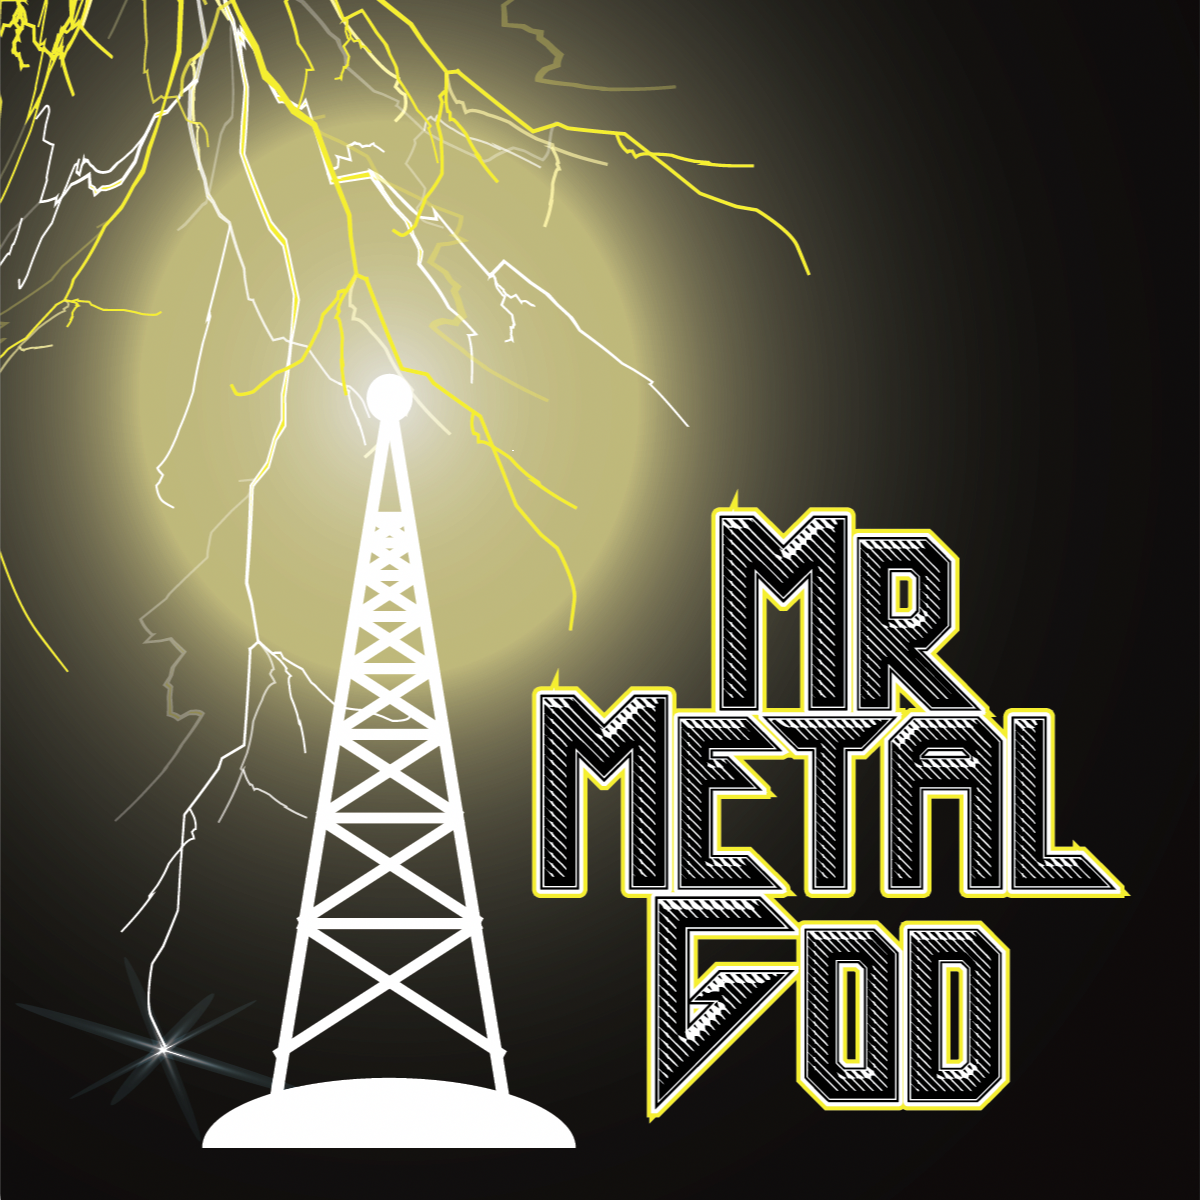 MrMetalGod radio - Metal for Mankind